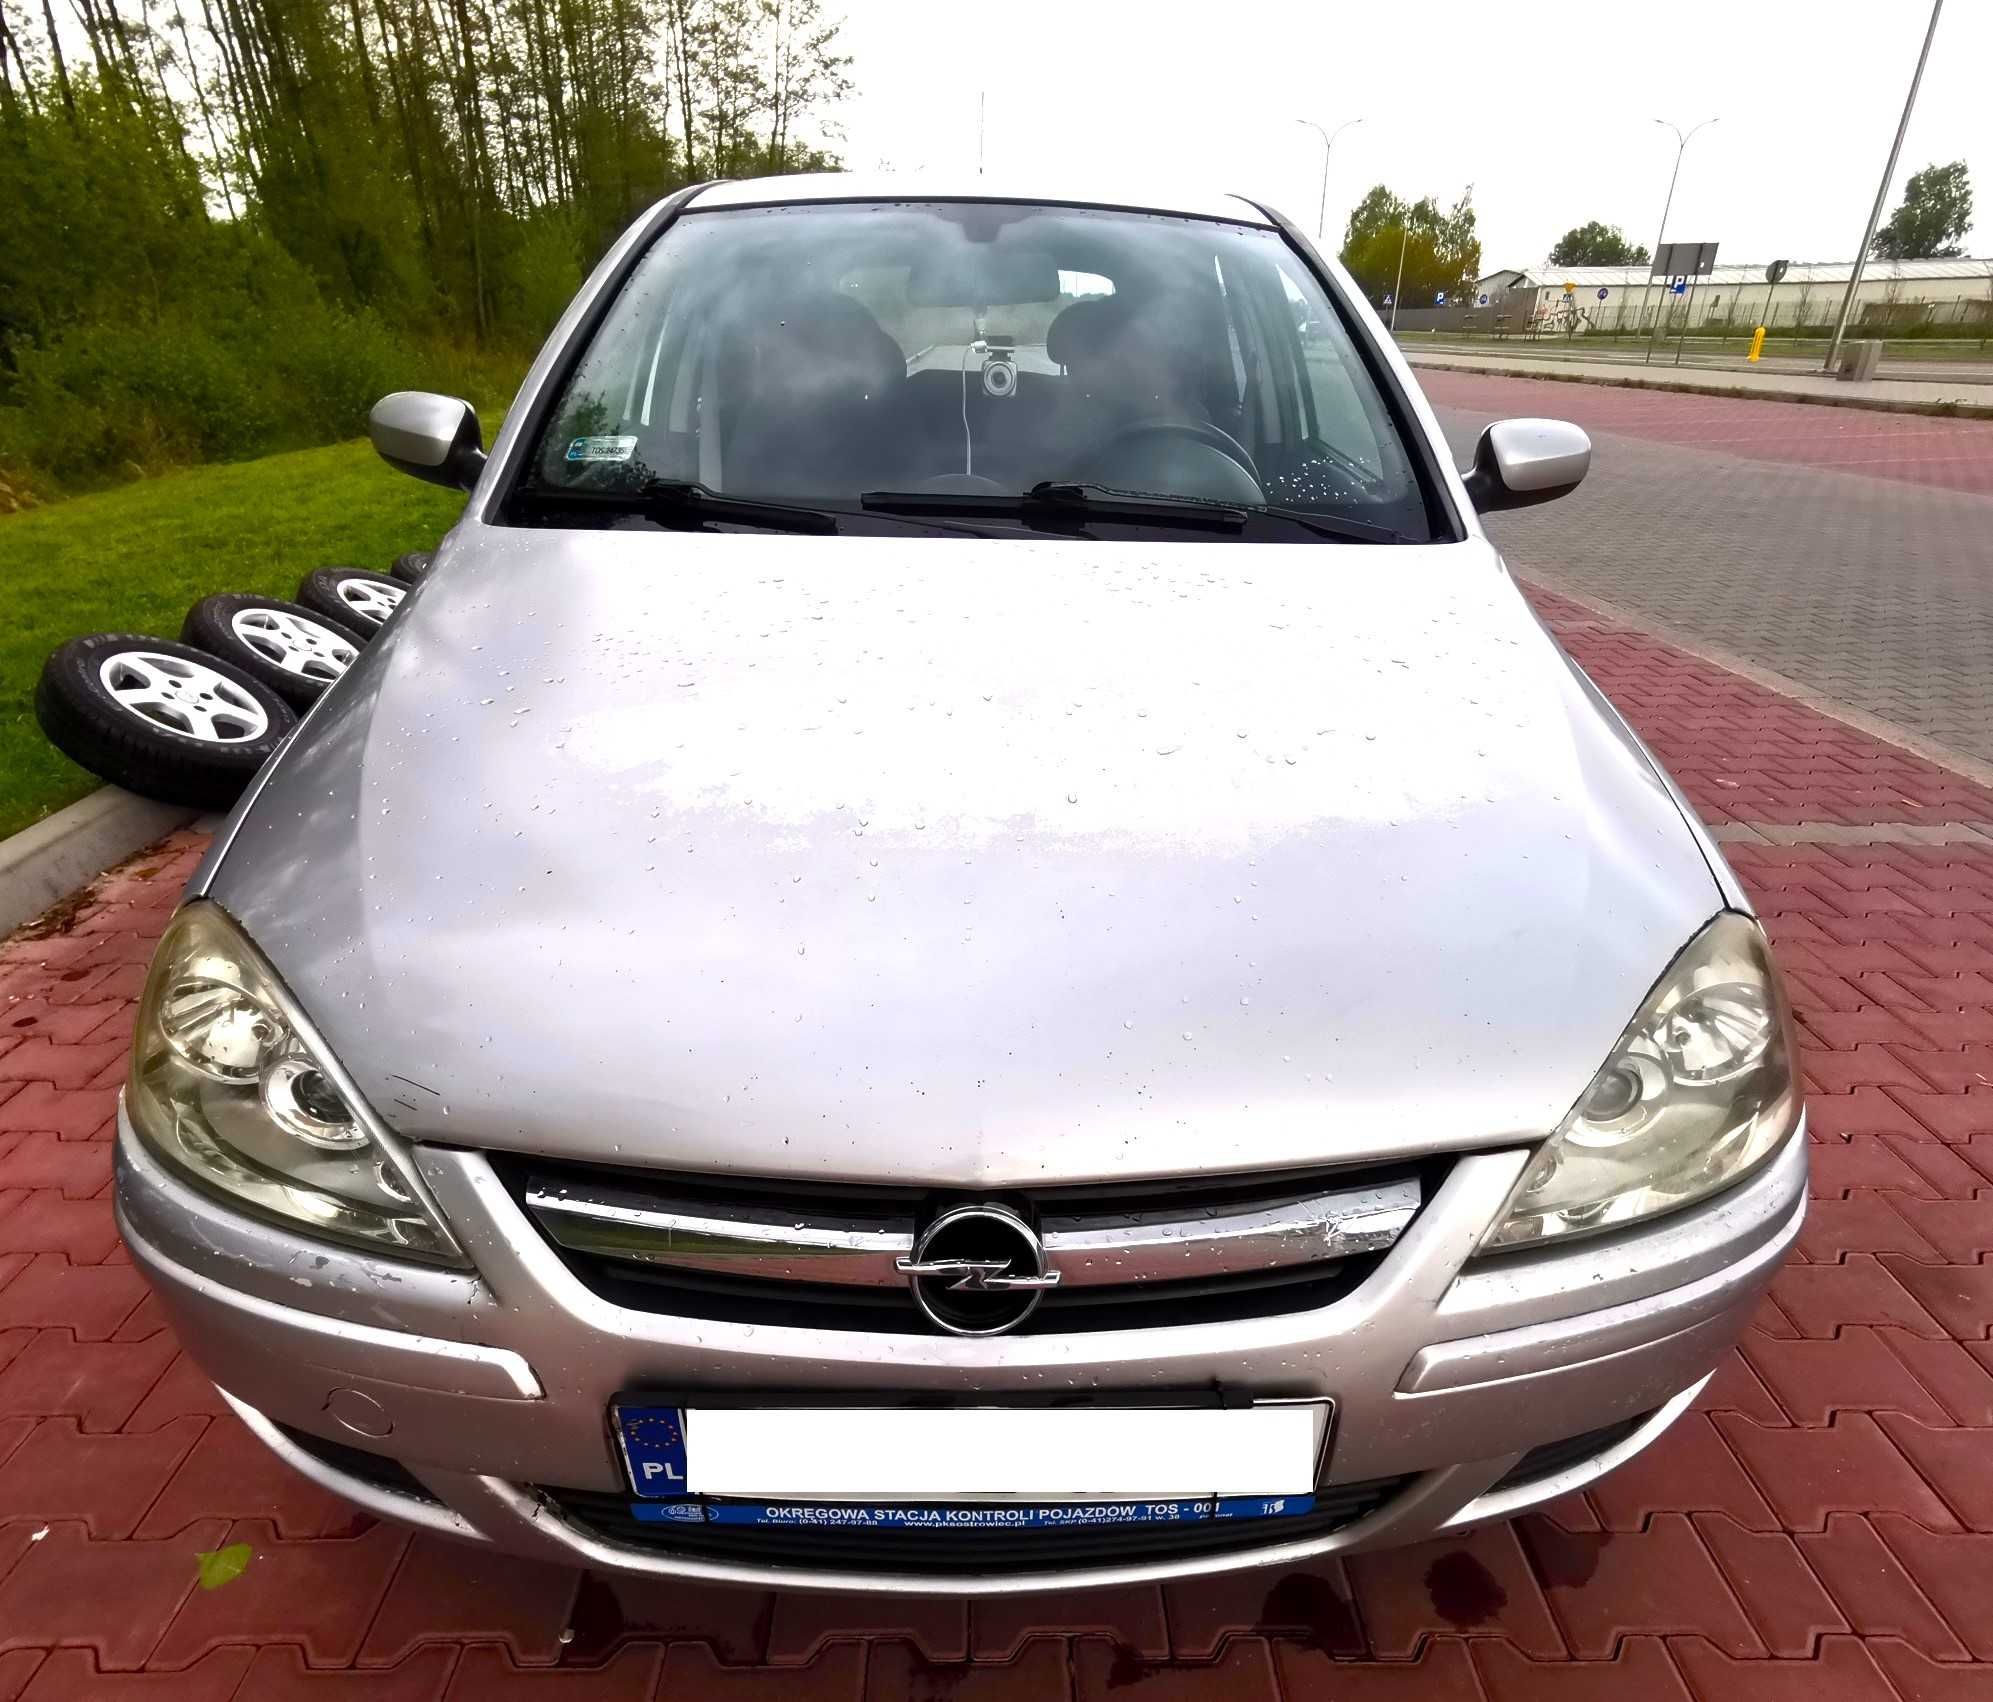 Opel Corsa C 2006r. 1,3 CDTI Diesel, klimatyzacja, wspomaganie